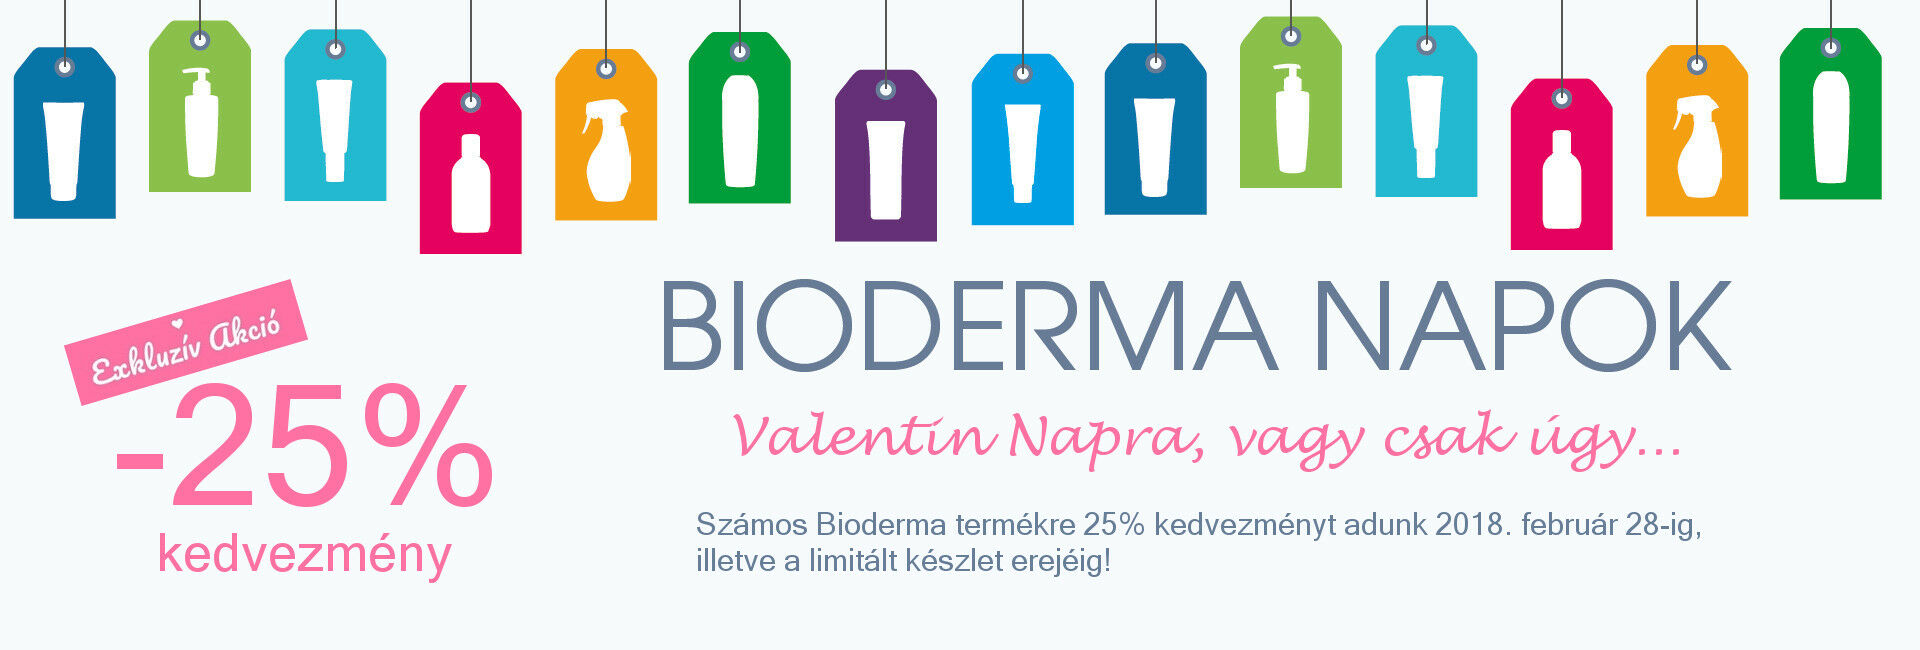 Valentin Napi exkluzív akció: 2018. február 28-ig számos Bioderma terméket 25% kedvezménnyel kínálunk!